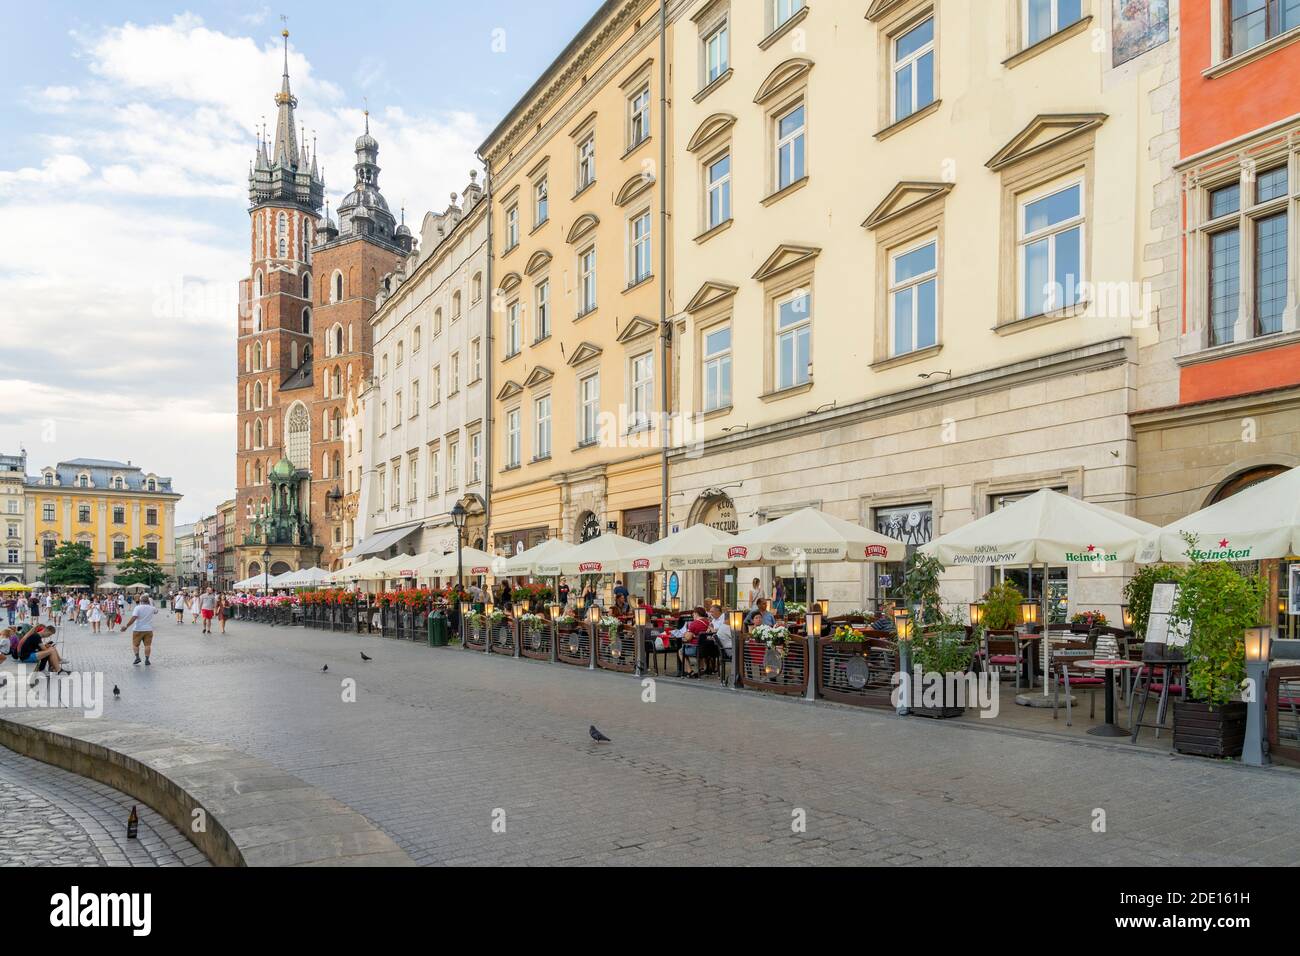 Old Town, UNESCO World Heritage Site, Krakow, Poland, Europe Stock Photo